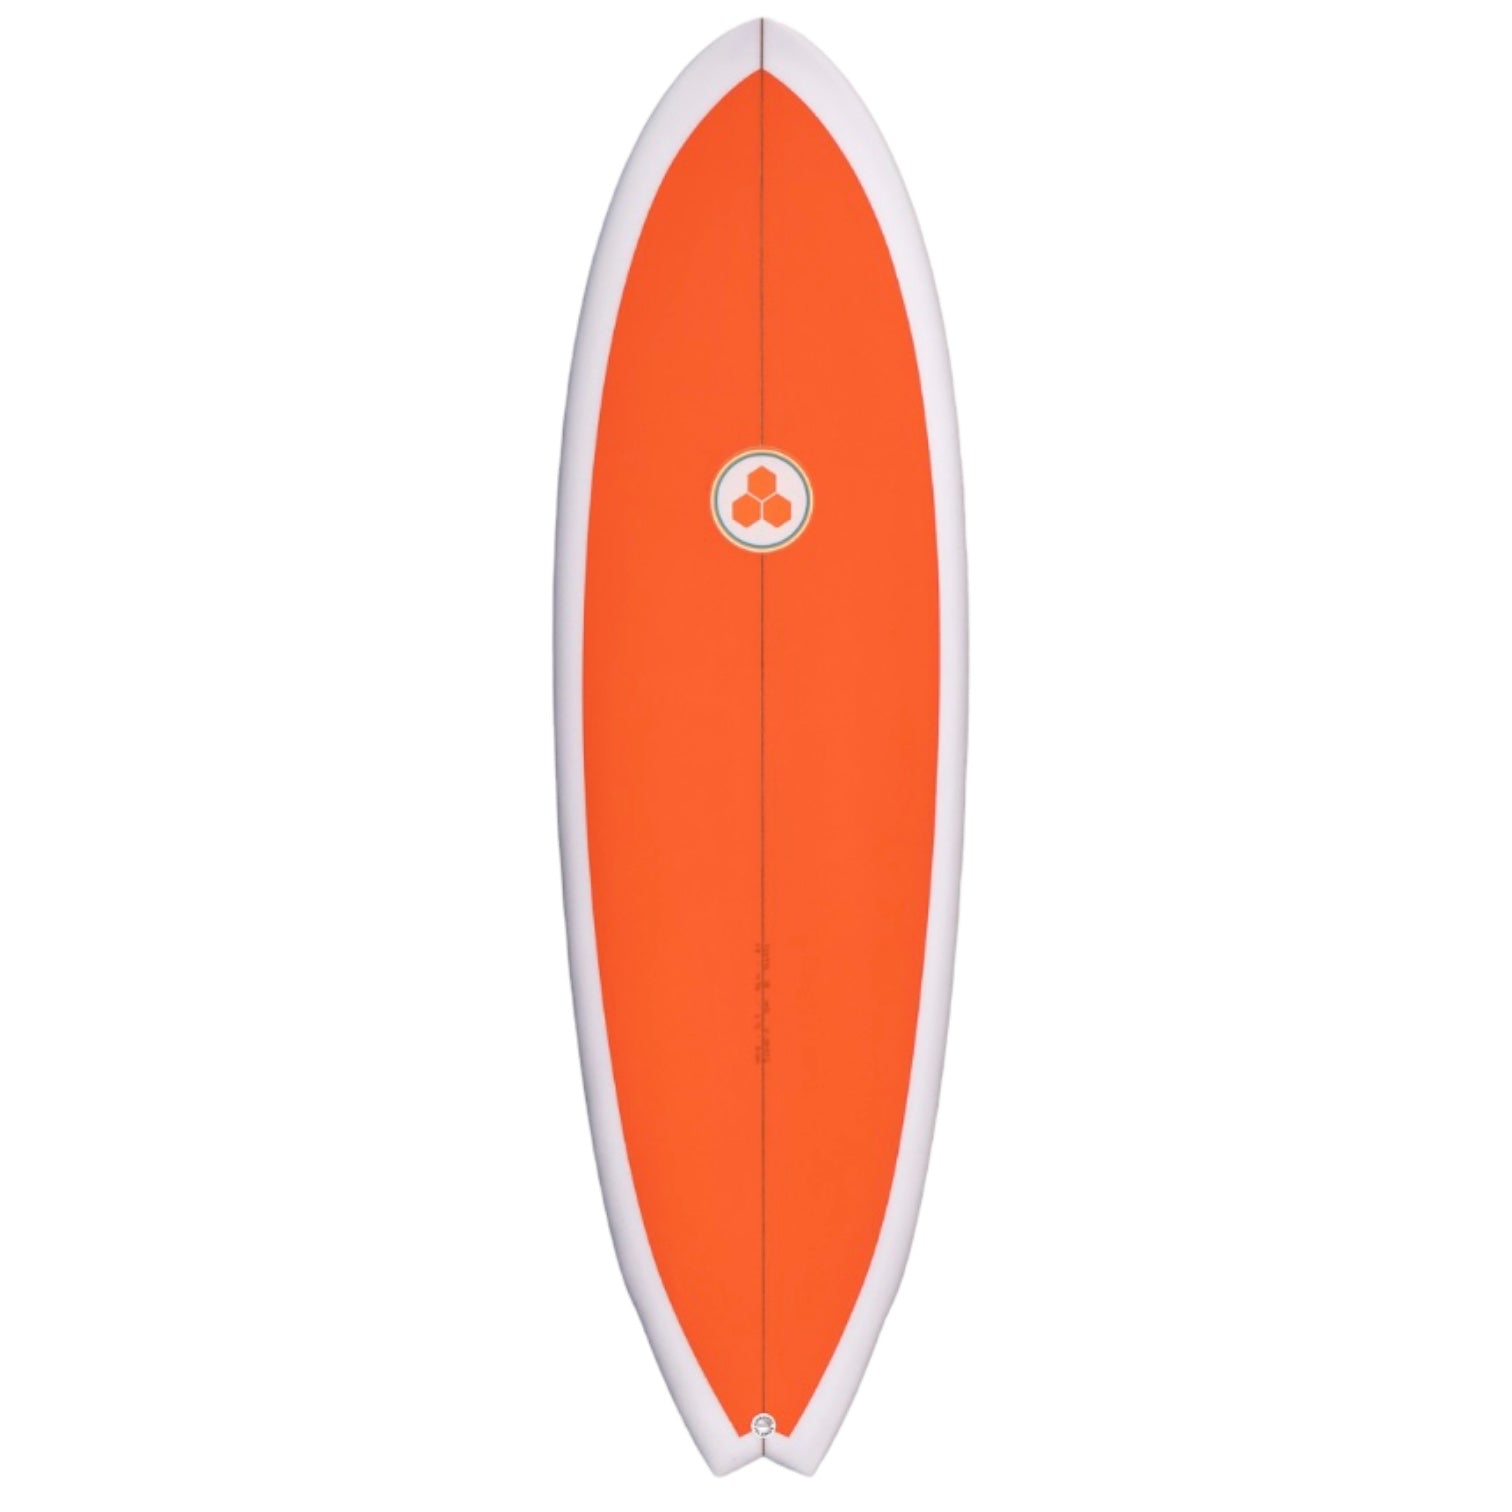 CHANNEL ISLANDS G SKATE surfboard